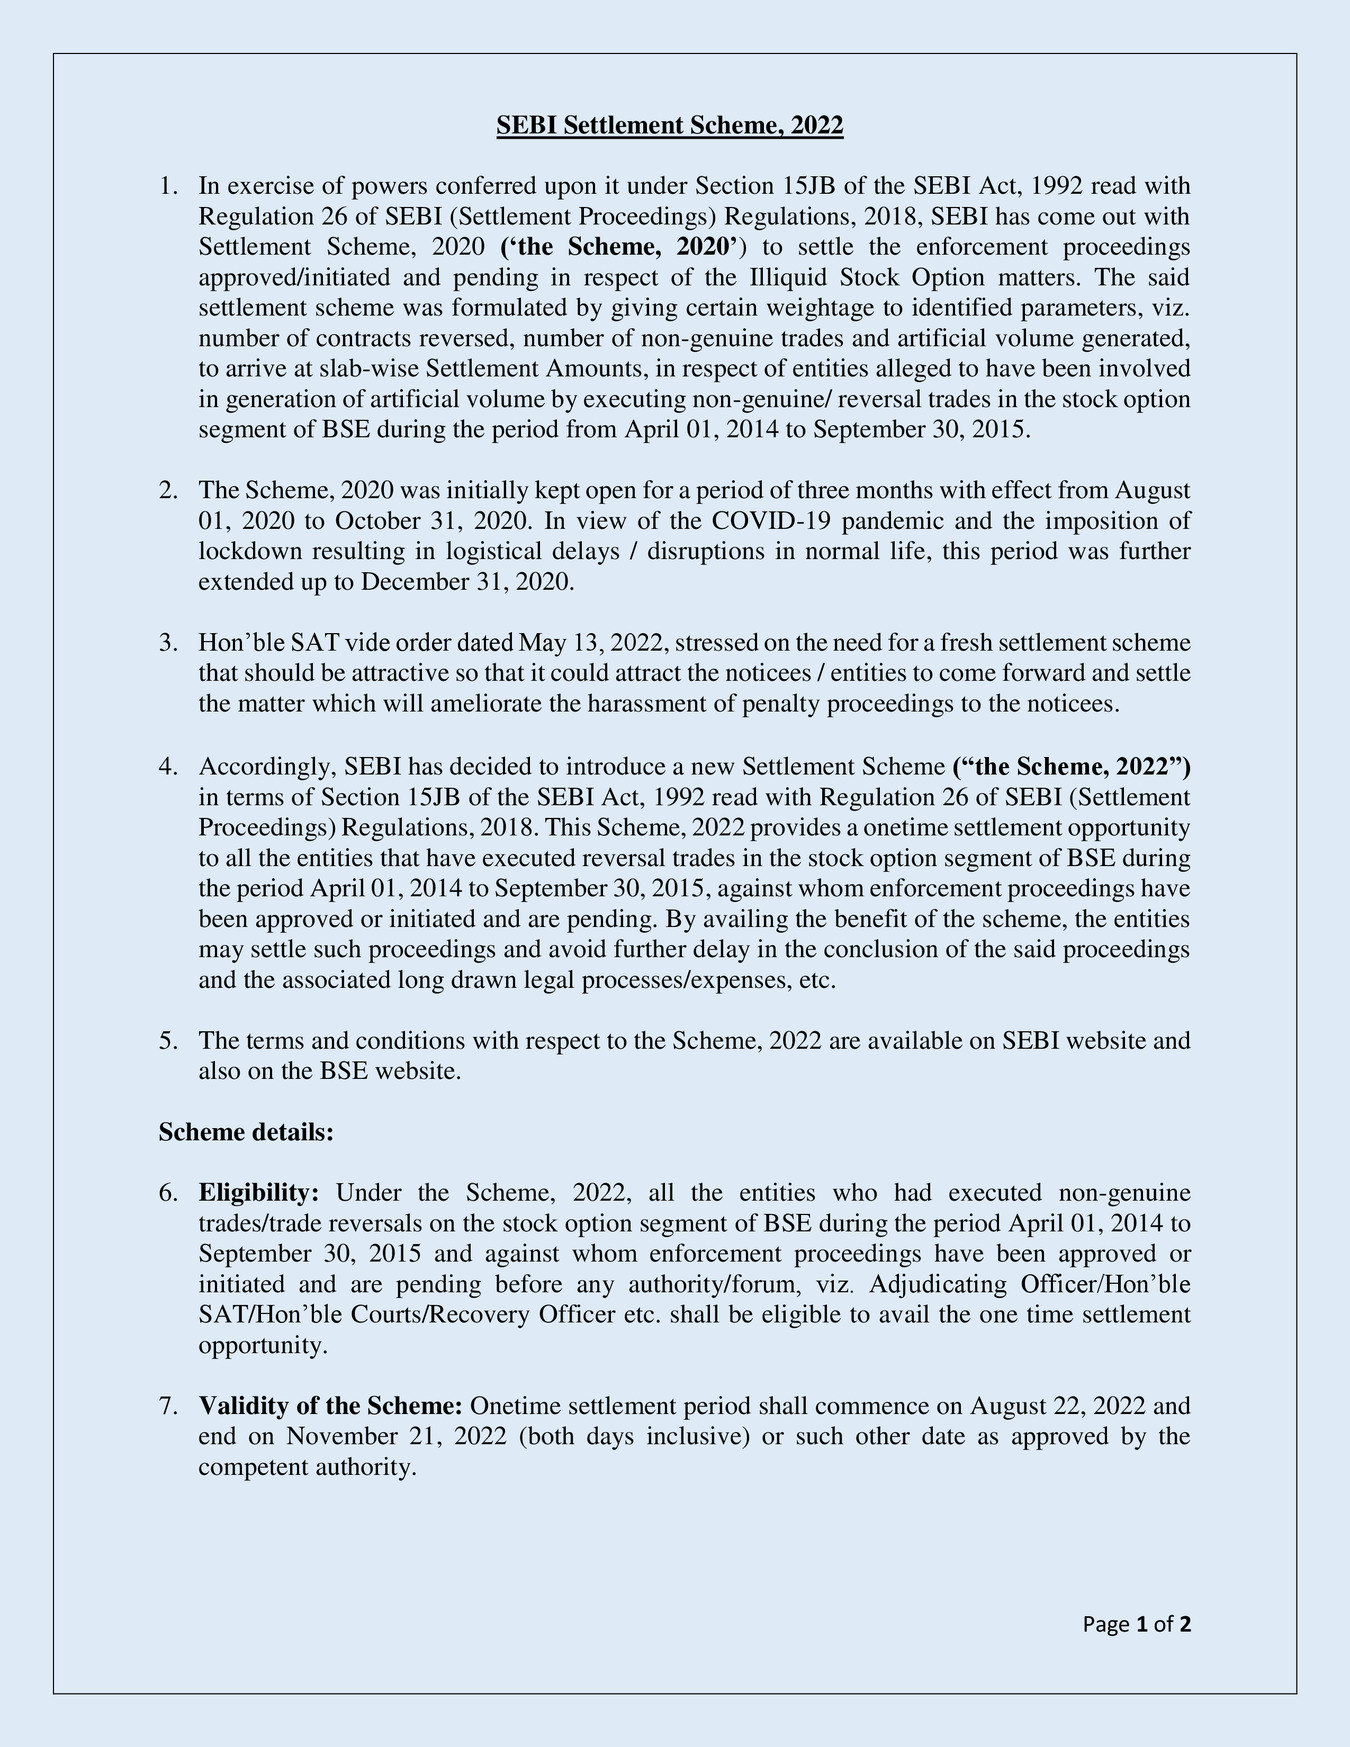 SEBI Settlement Scheme 2024 Guidelines PDF